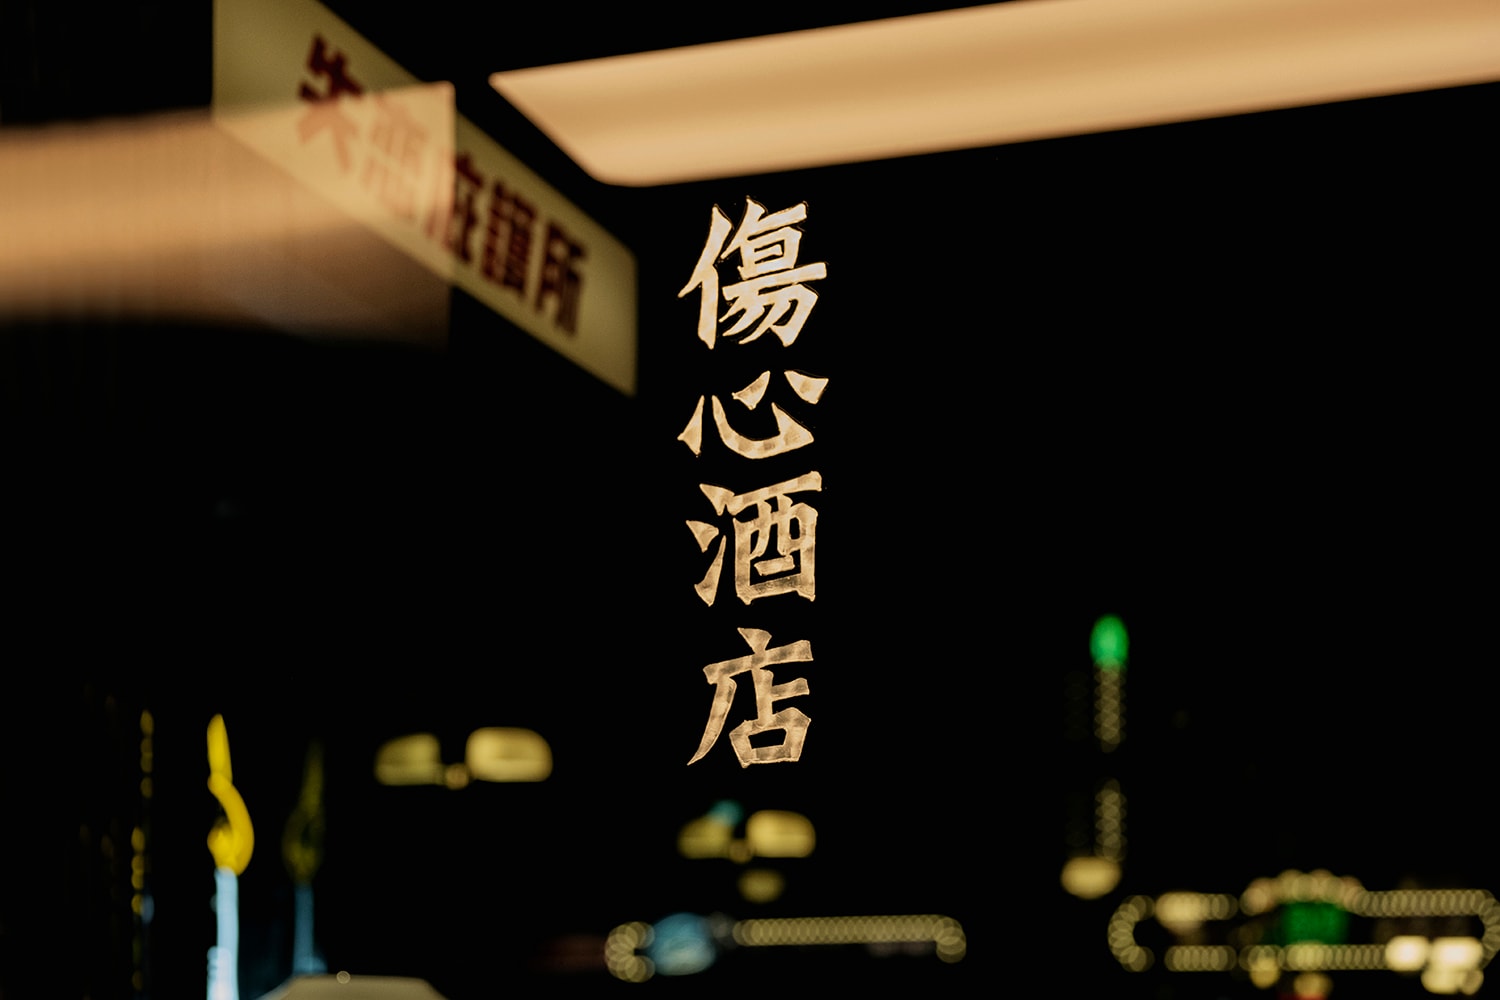 成為你的失戀庇護所！台北最新風格酒吧「傷心酒店」正式開業